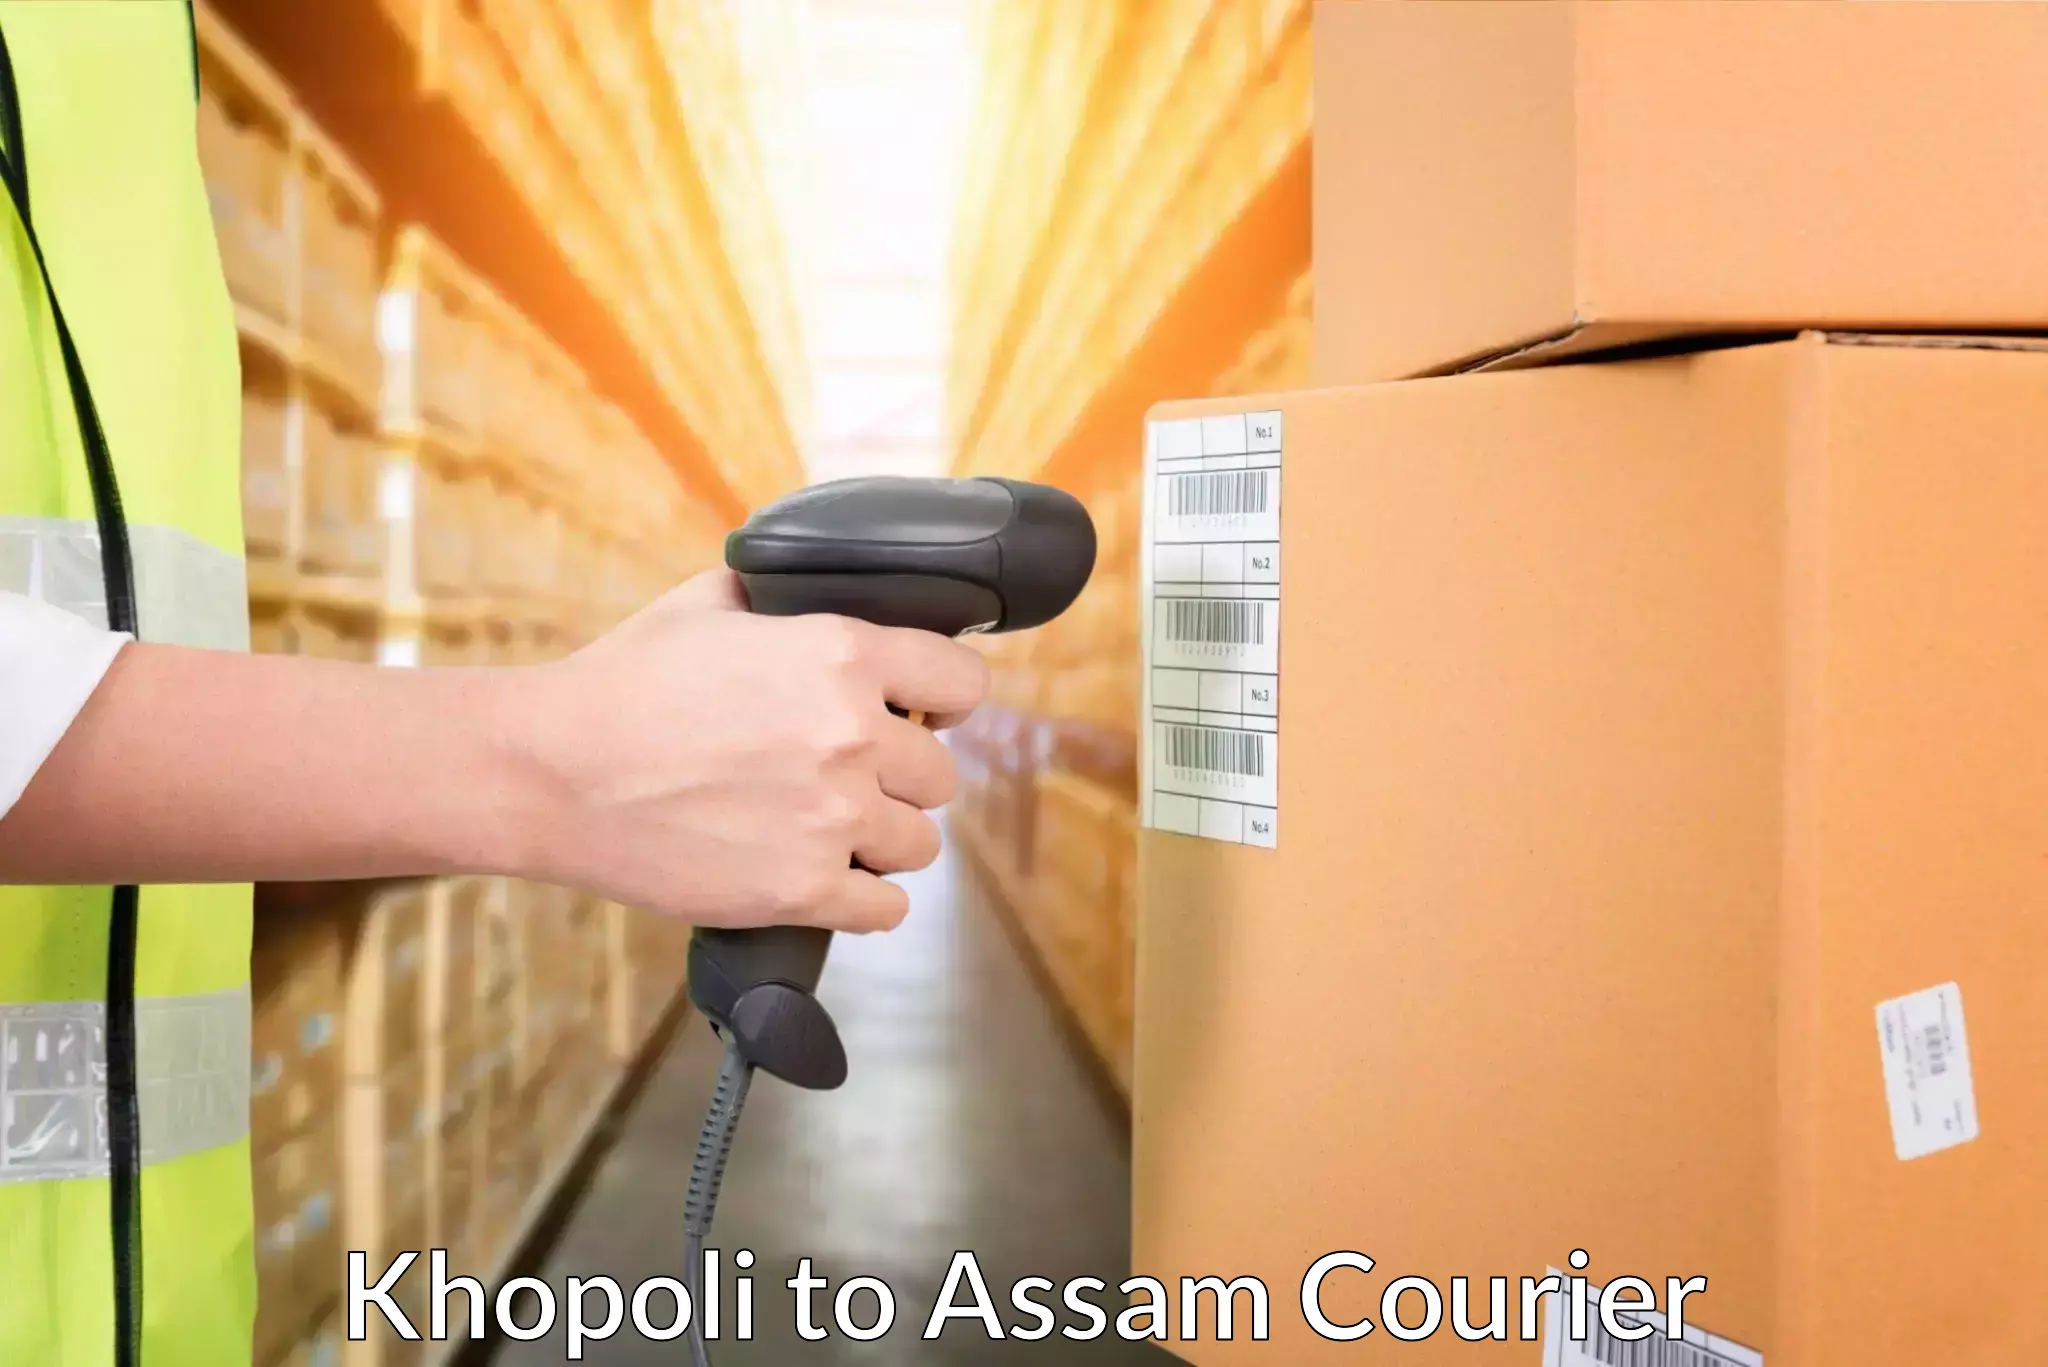 Next-day delivery options Khopoli to IIT Guwahati